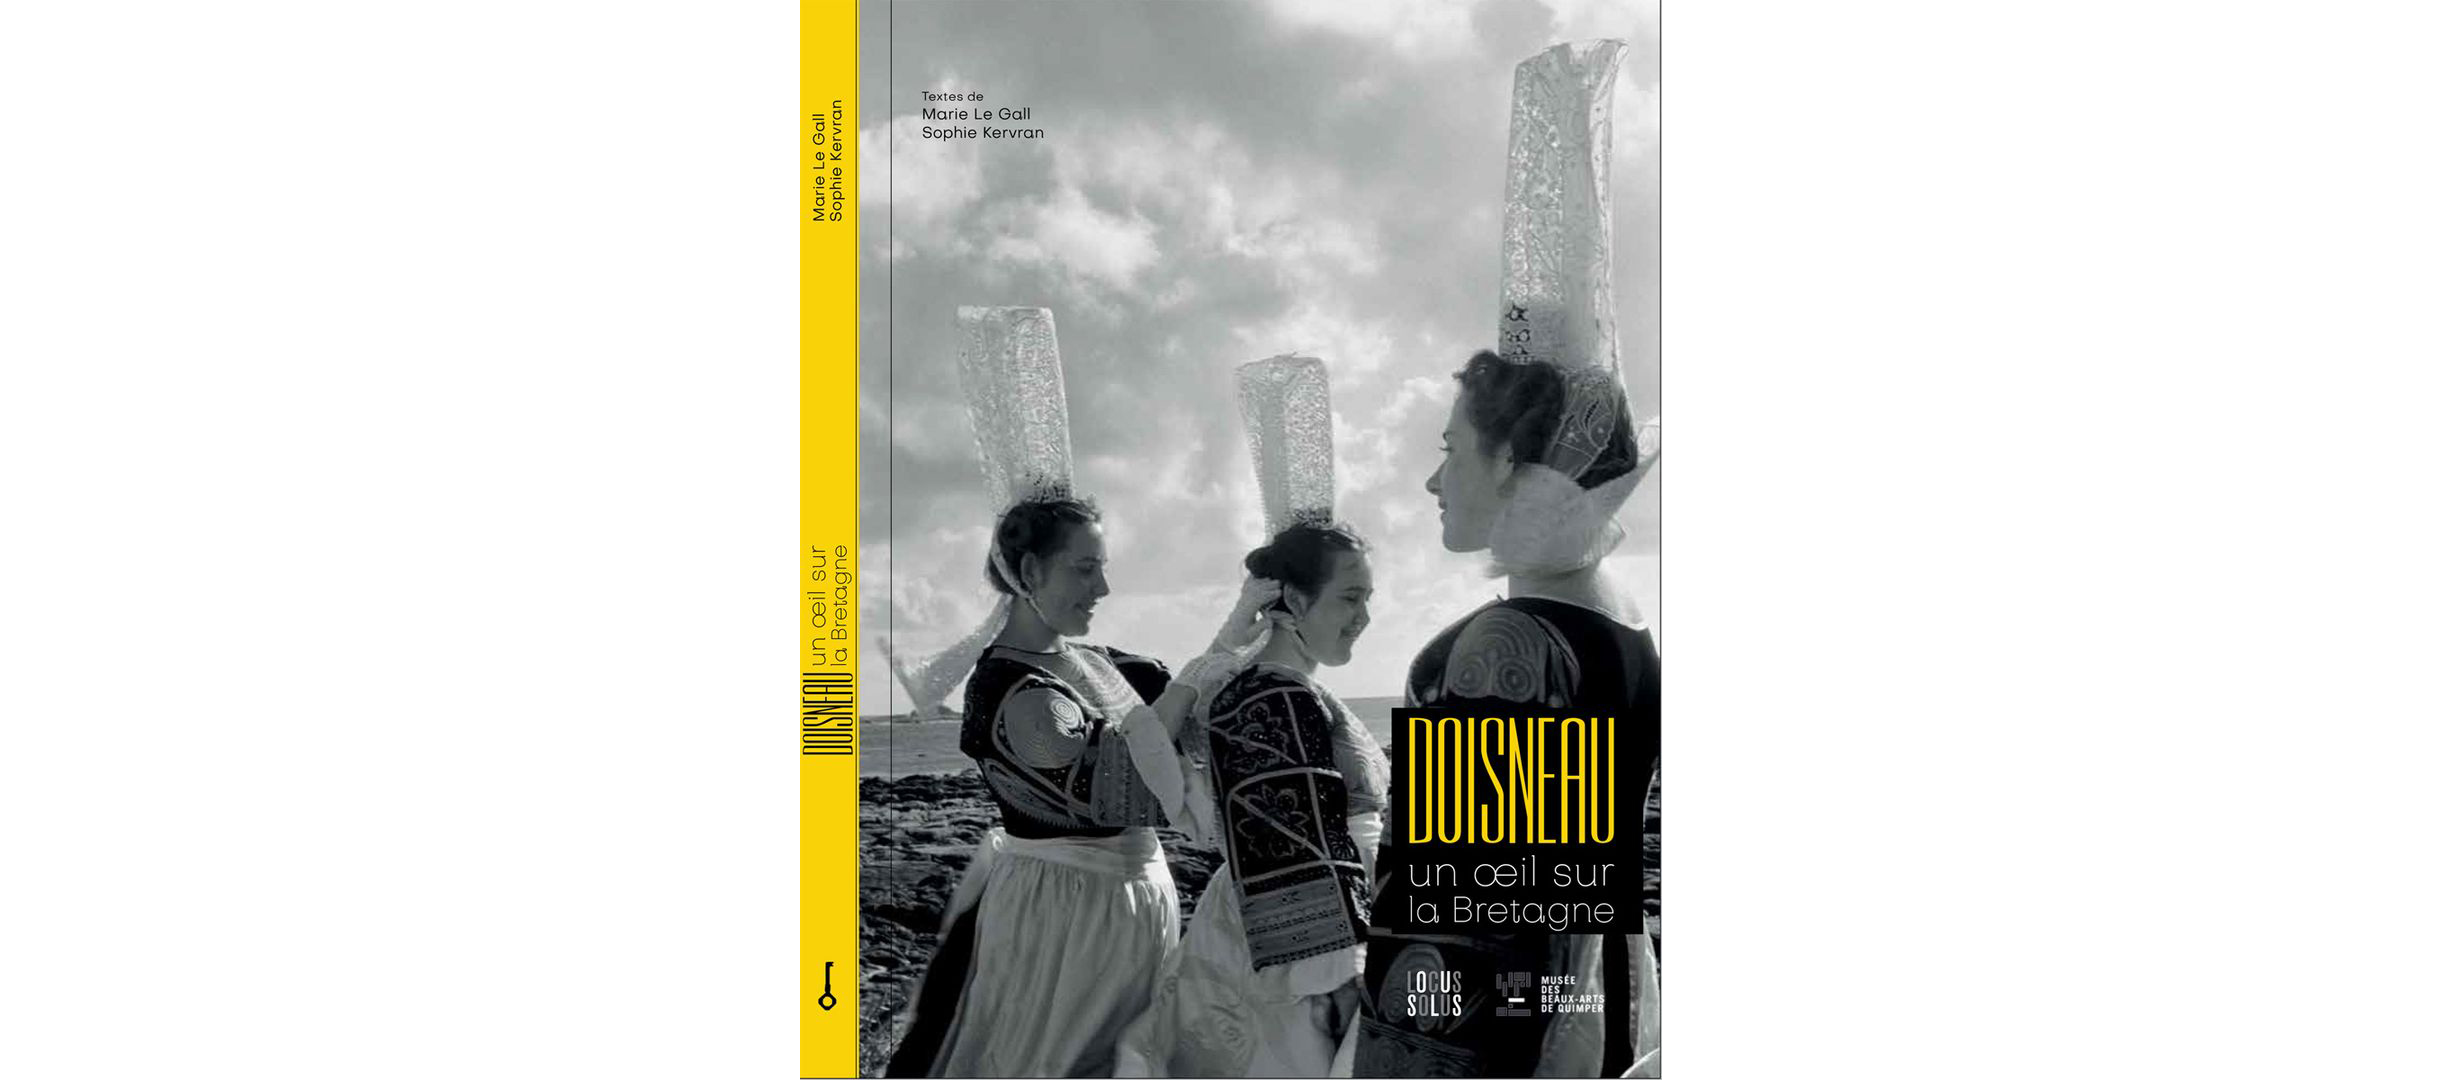 Coverphoto in schwarz weiß, drei Bretoninnen tragen sehr hohe und fast durchsichtige Hauben